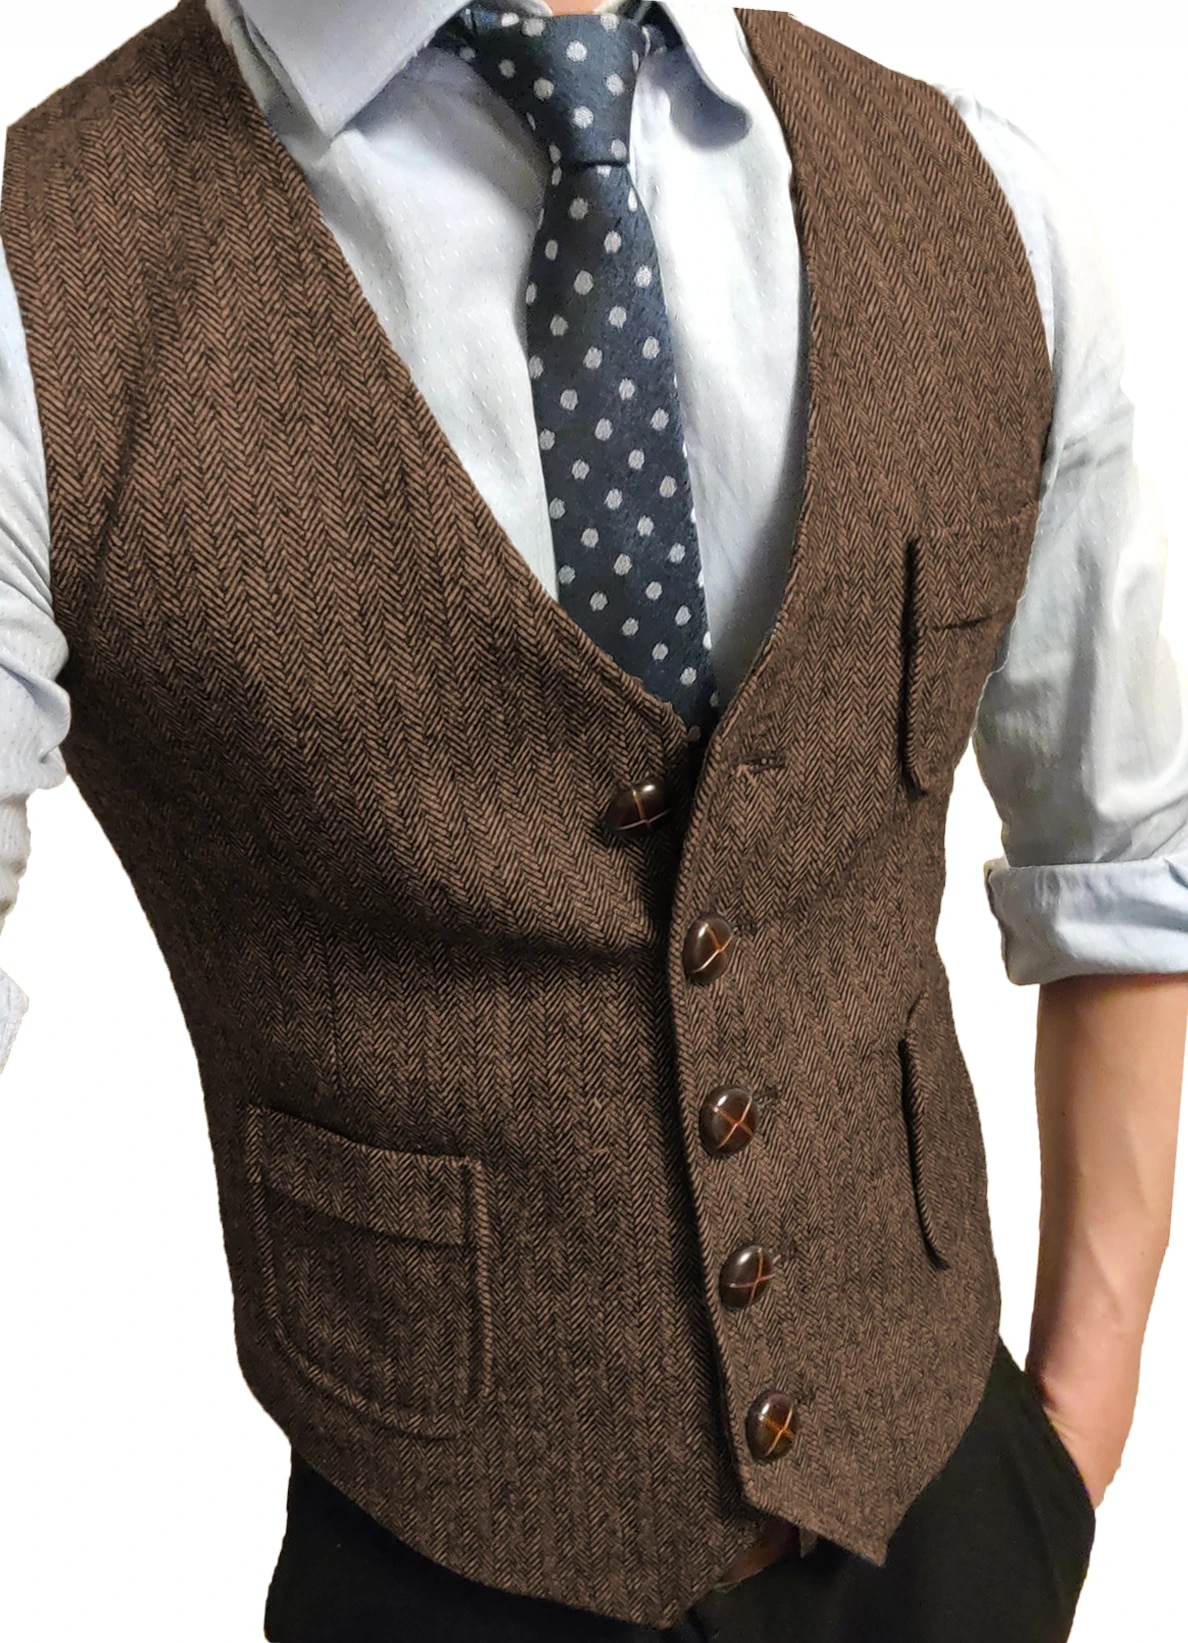 come4buy.com-Vintage Cotton Vests For Men